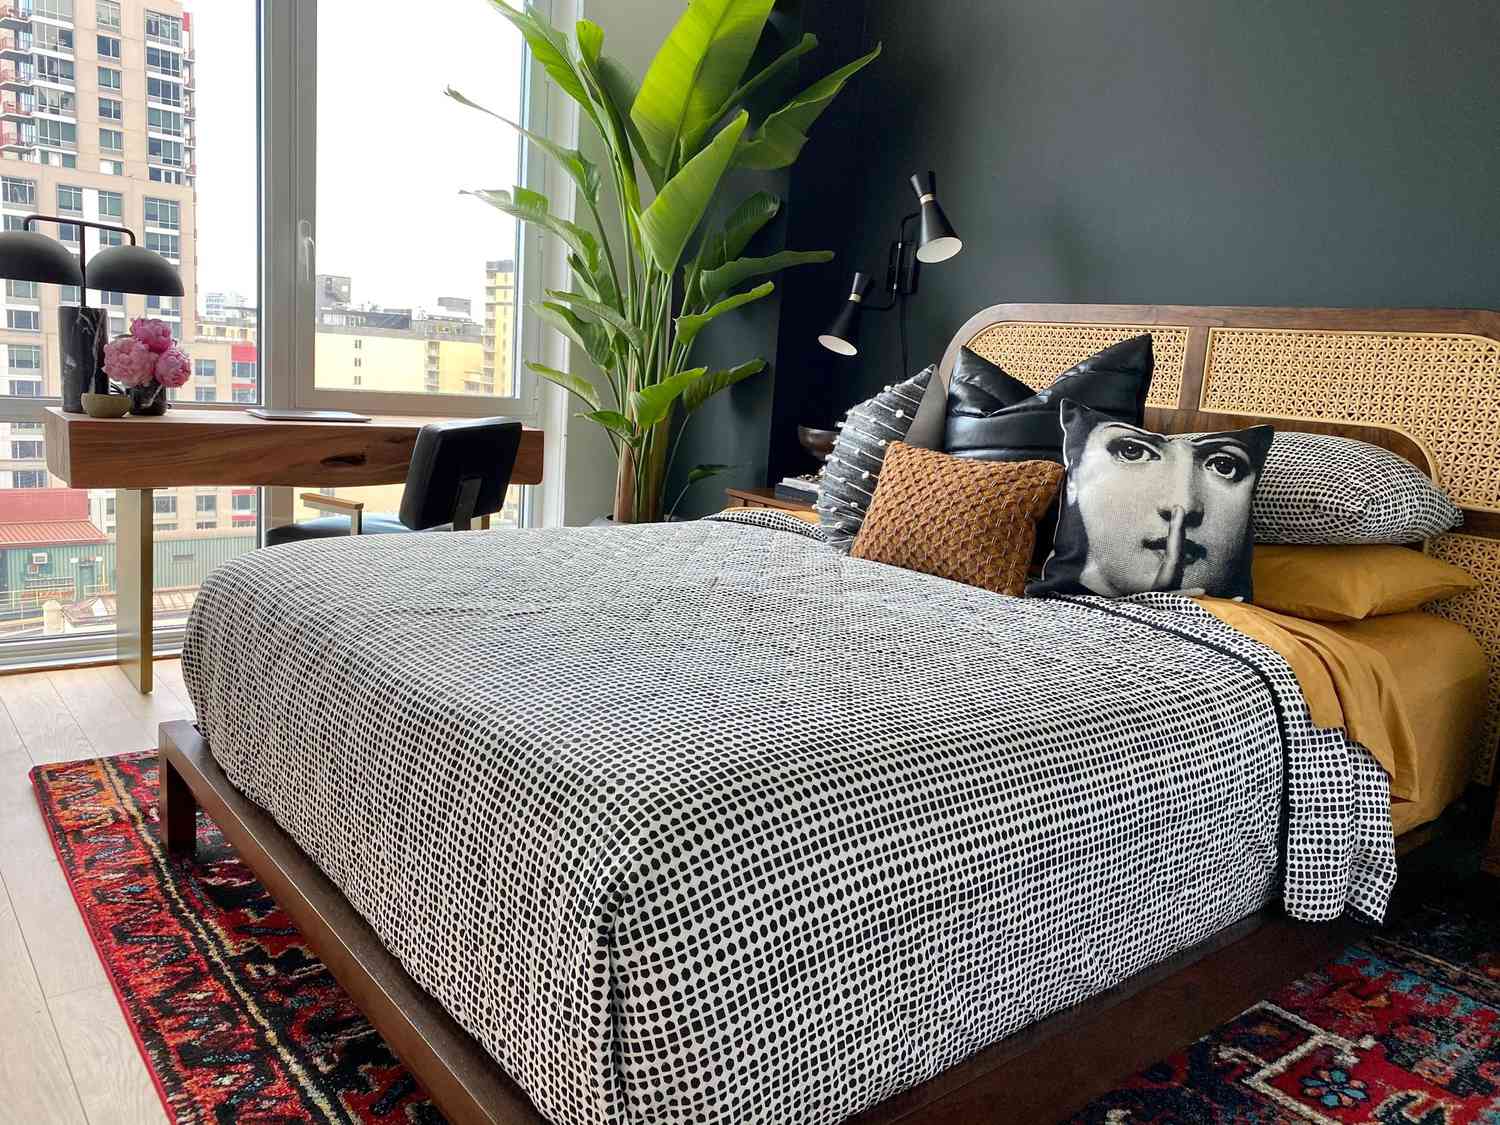 chambre moderne marron et noire avec grande plante, coussins de styles variés, tapis éclectique